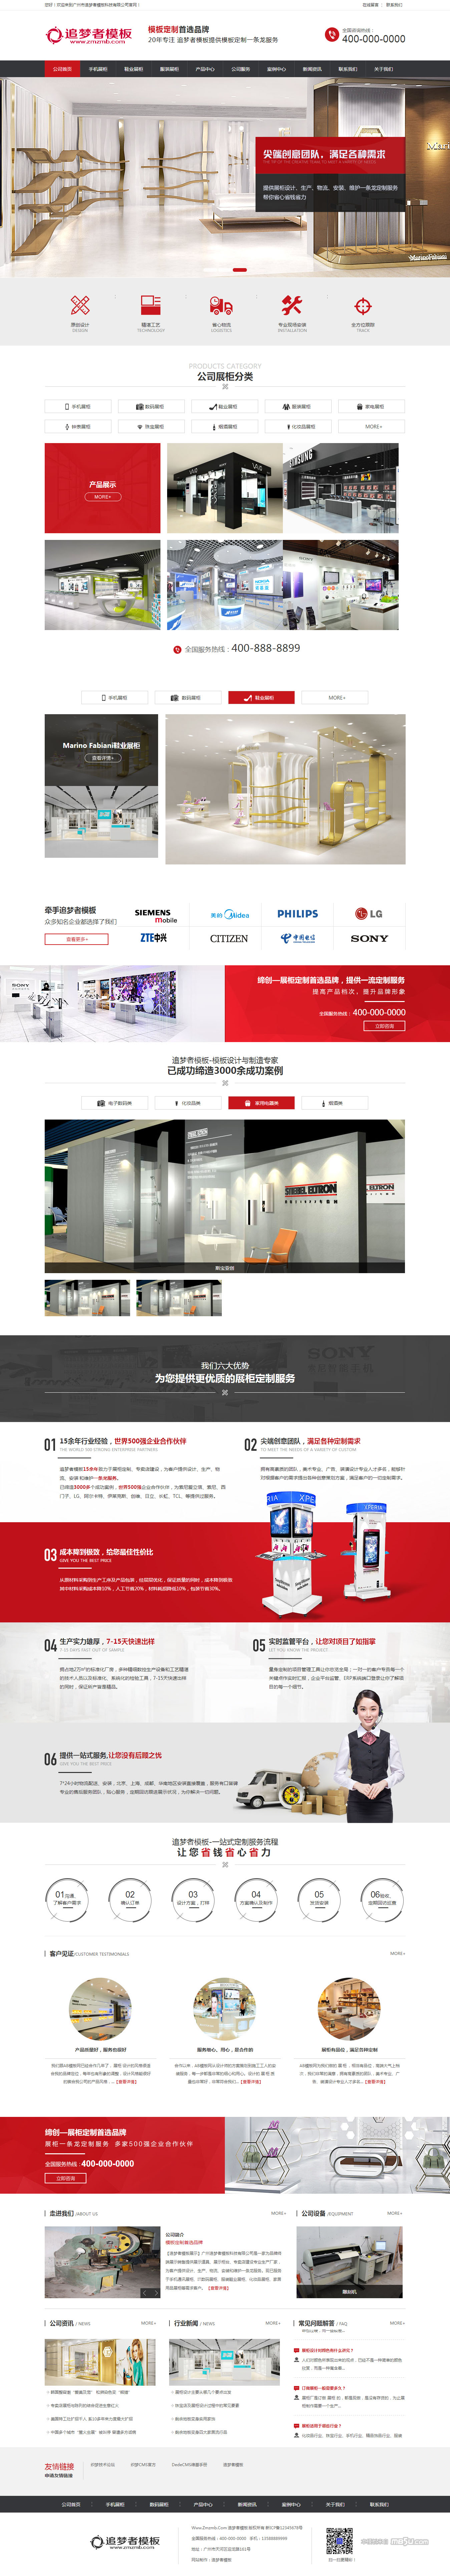 大气织梦家具产品展示企业公司网站模板